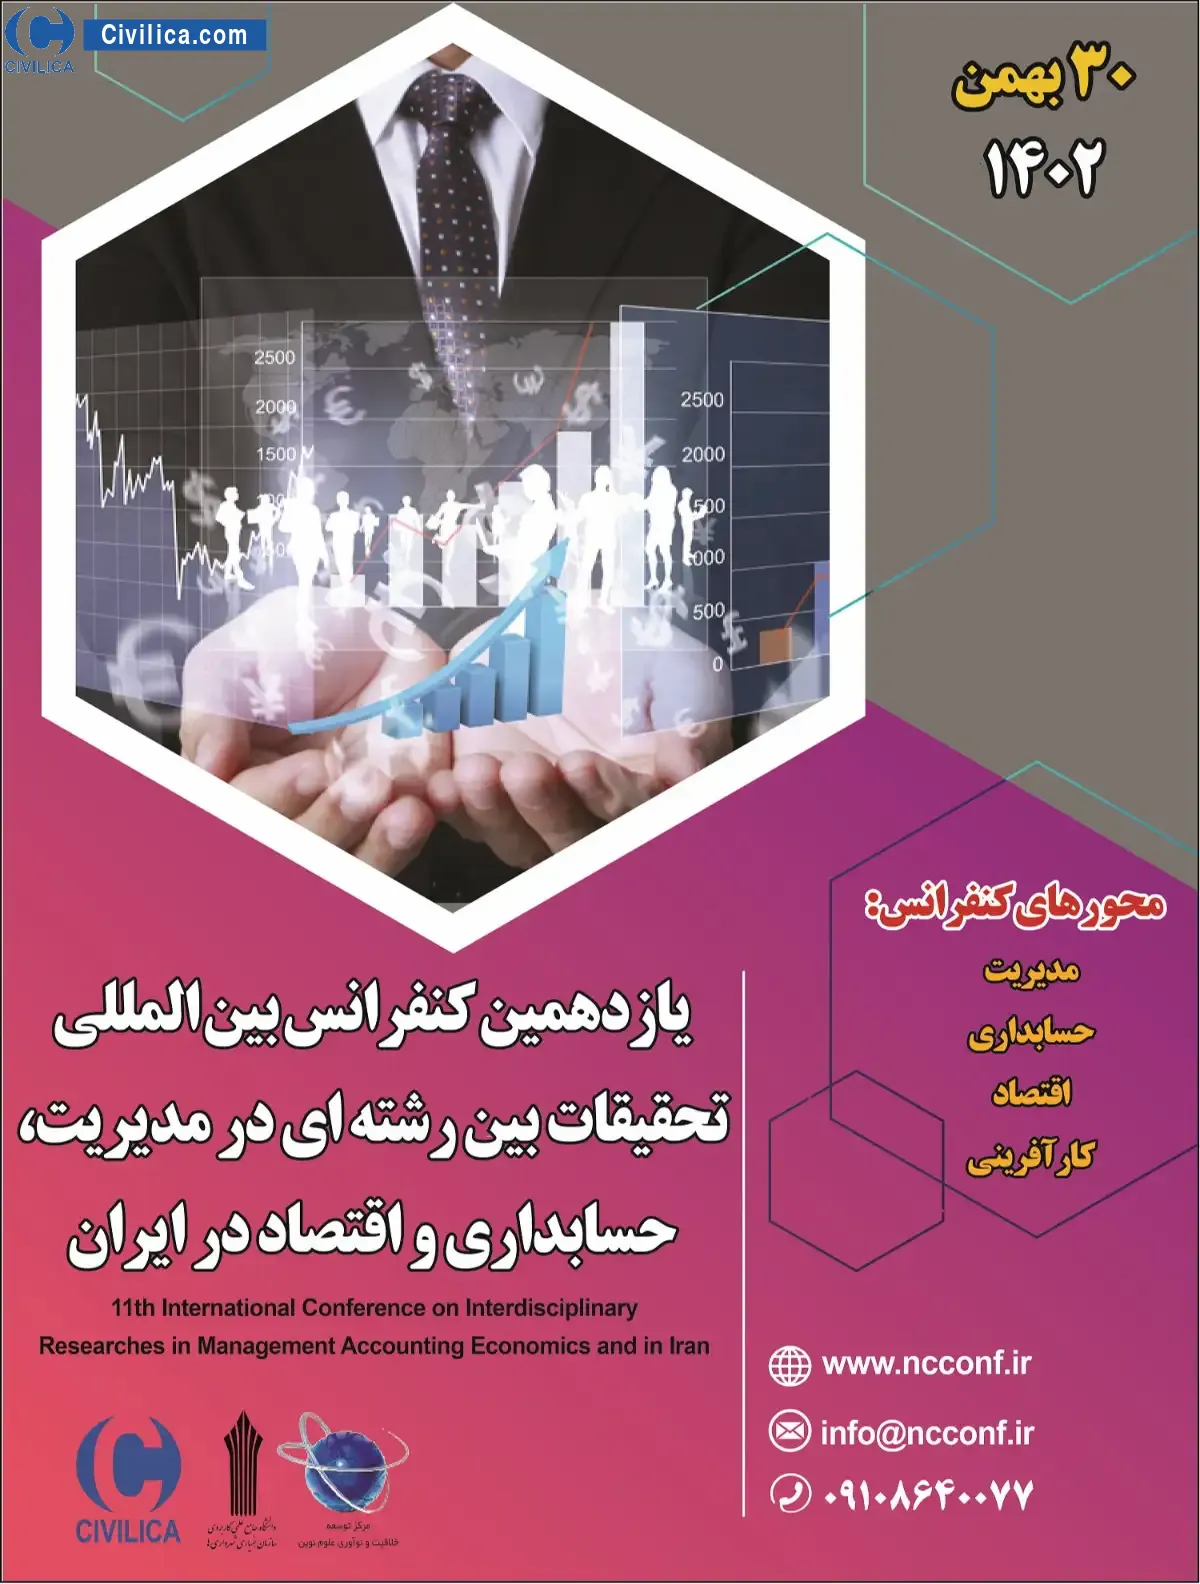 یازدهمین کنفرانس بین المللی تحقیقات بین رشته ای در مدیریت، حسابداری و اقتصاد در ایران